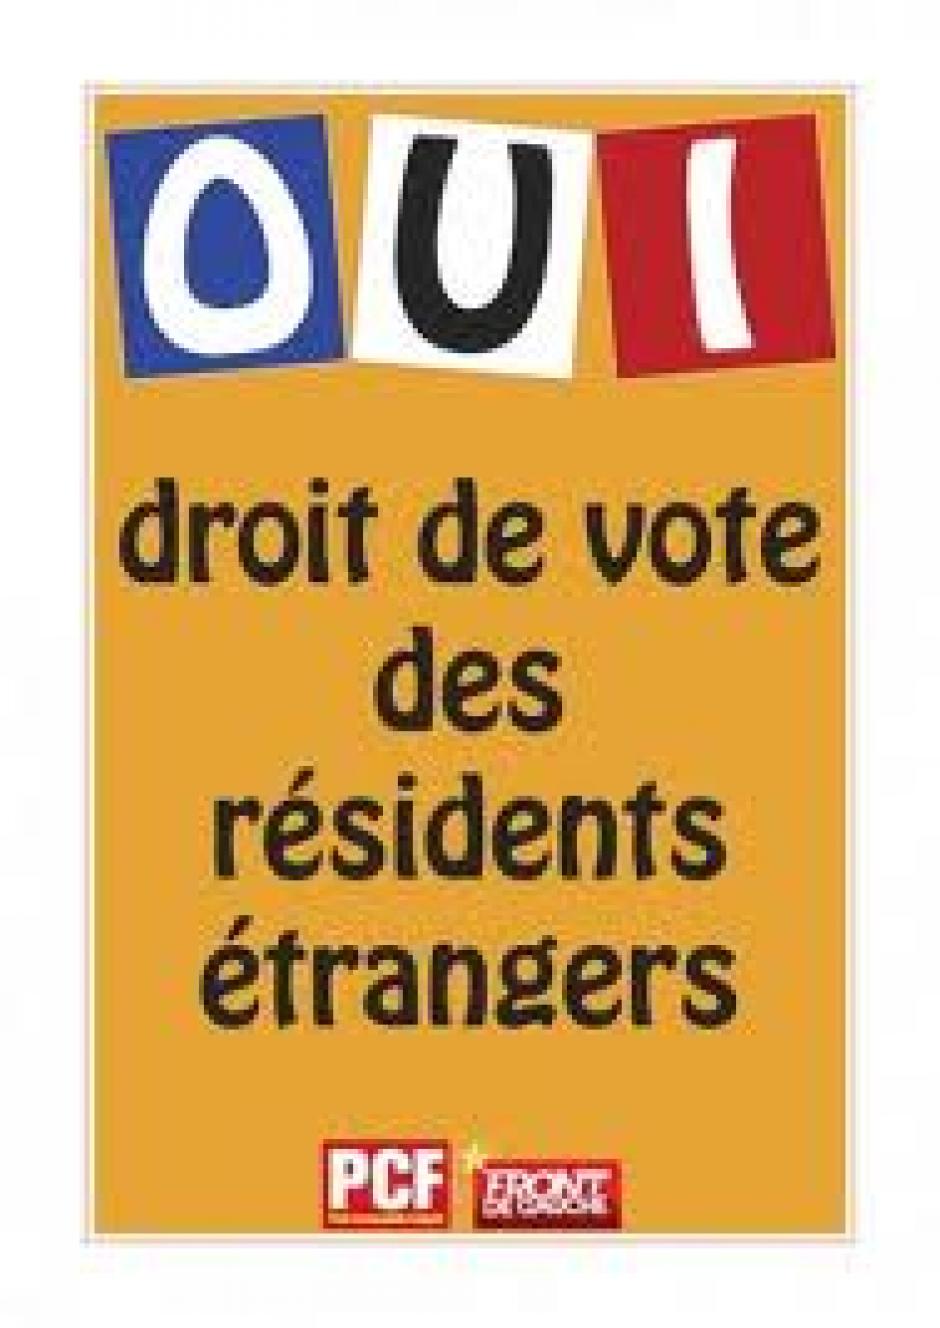 Vote des résidents étrangers. « Annuler sans attendre cette anomalie démocratique »